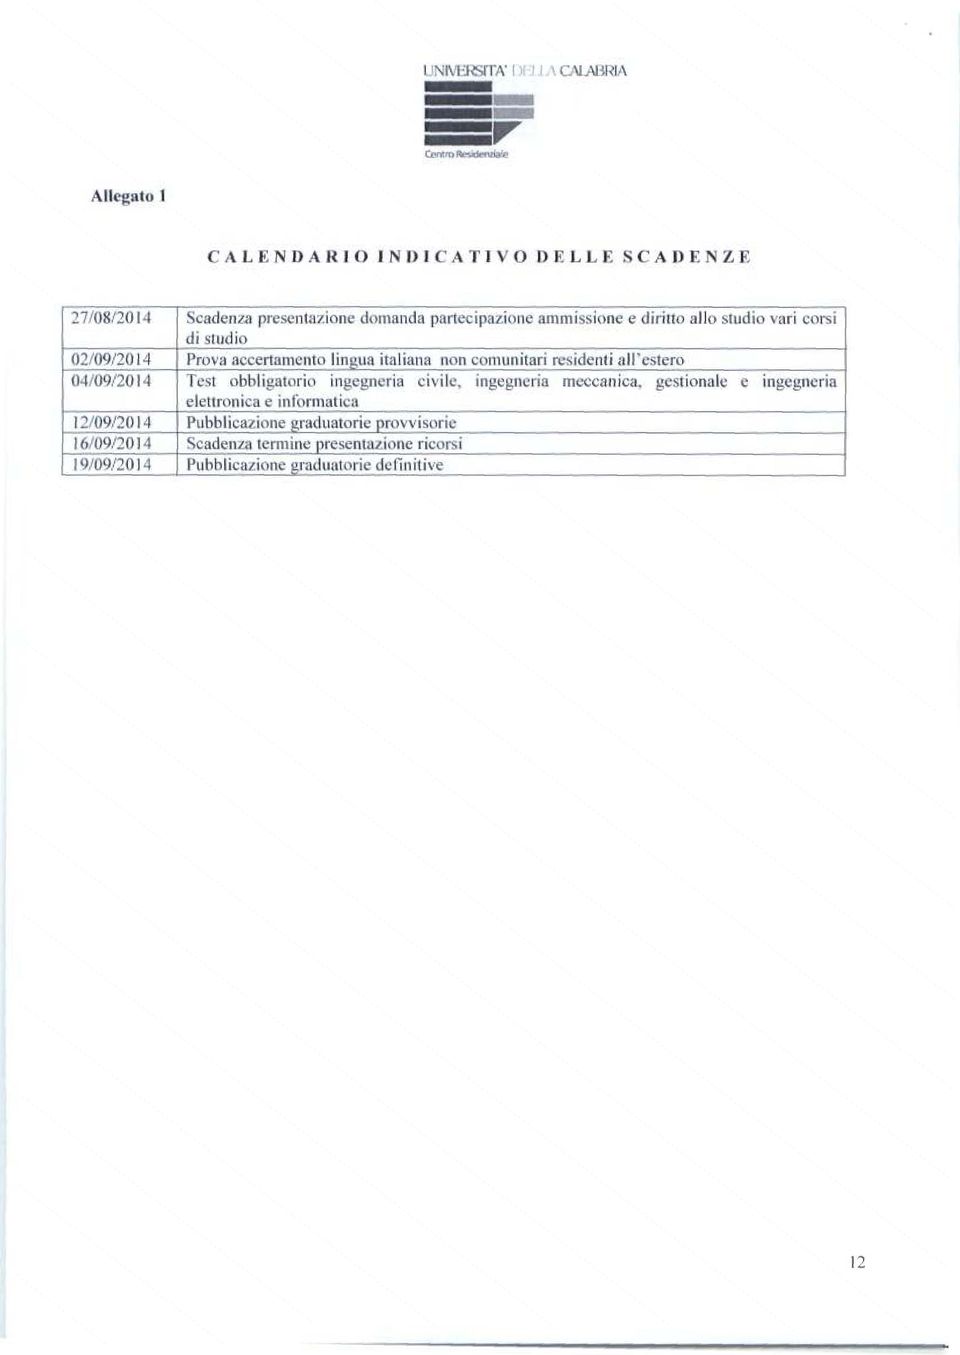 Test obbligatorio ingegne ria civile, ingegneria meccanica, gestionale e ingegneria e lettronica e informatica 12/09/2014